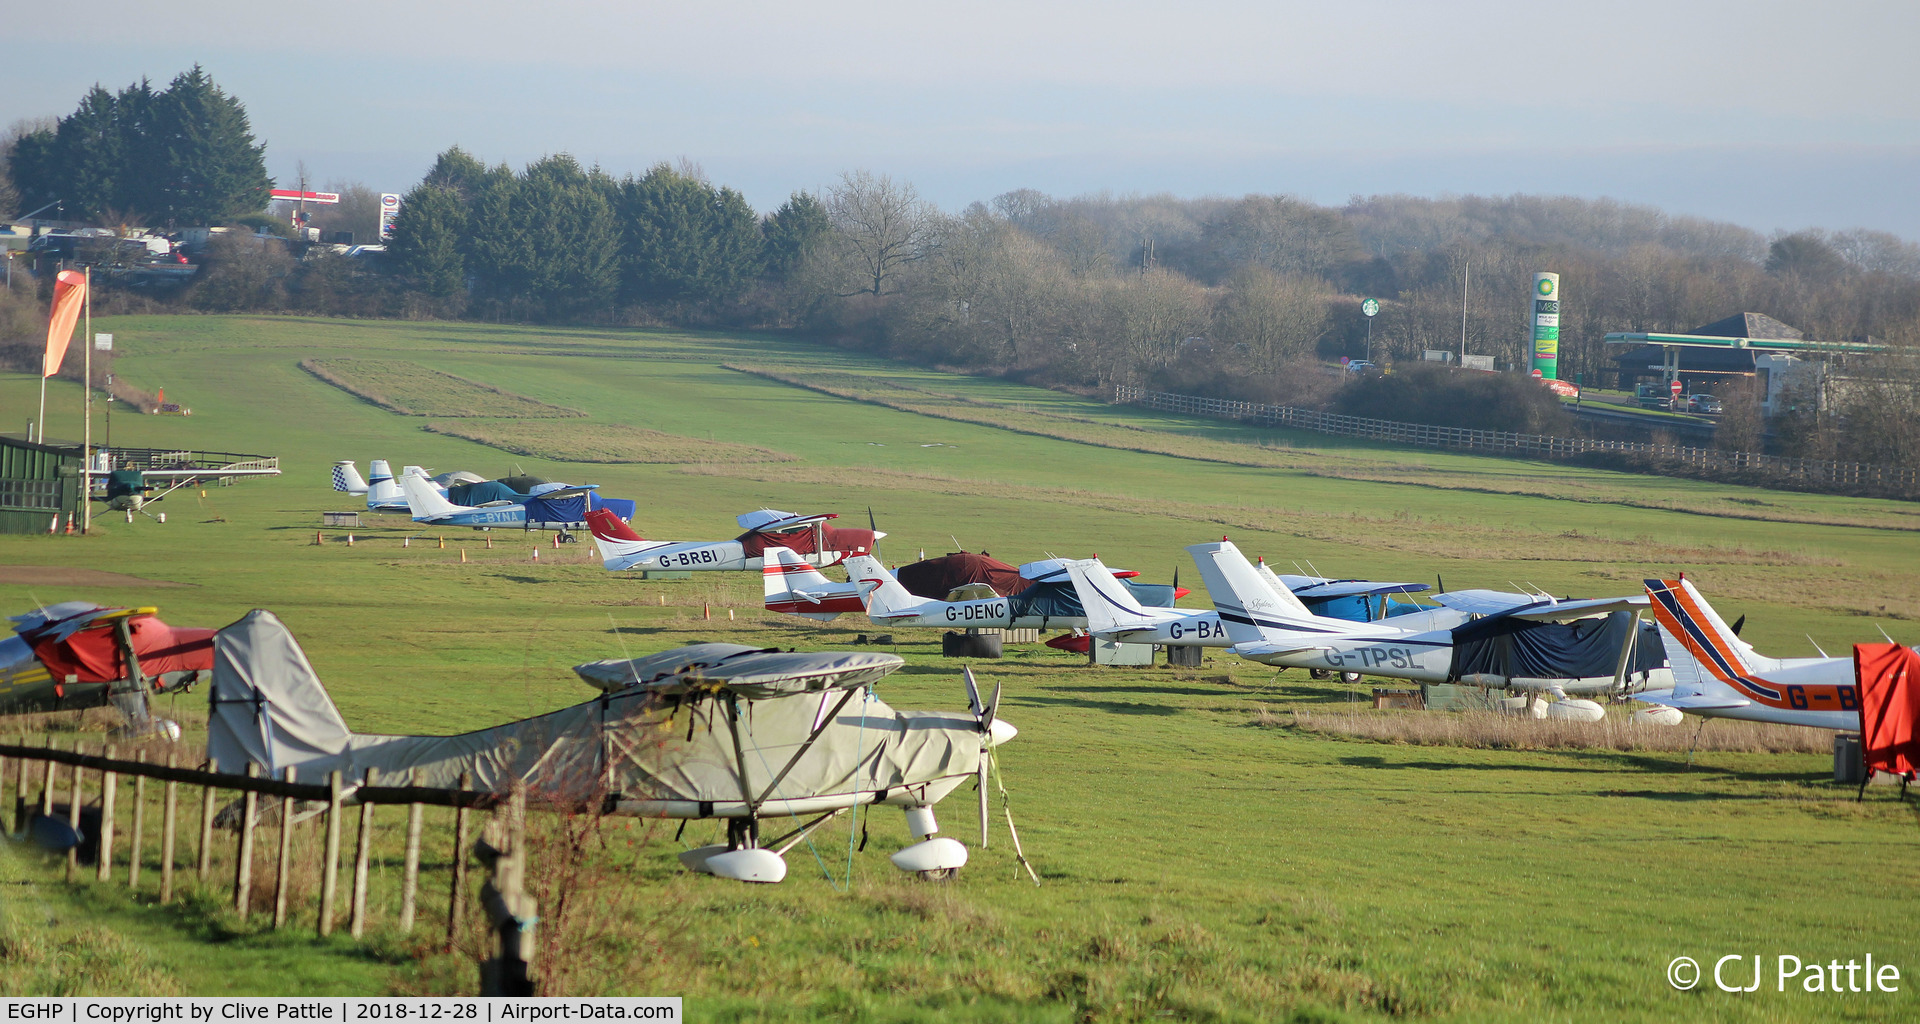 Popham Airfield Airport, Popham, England United Kingdom (EGHP) - Popham, Hampshire - GA aircraft line up